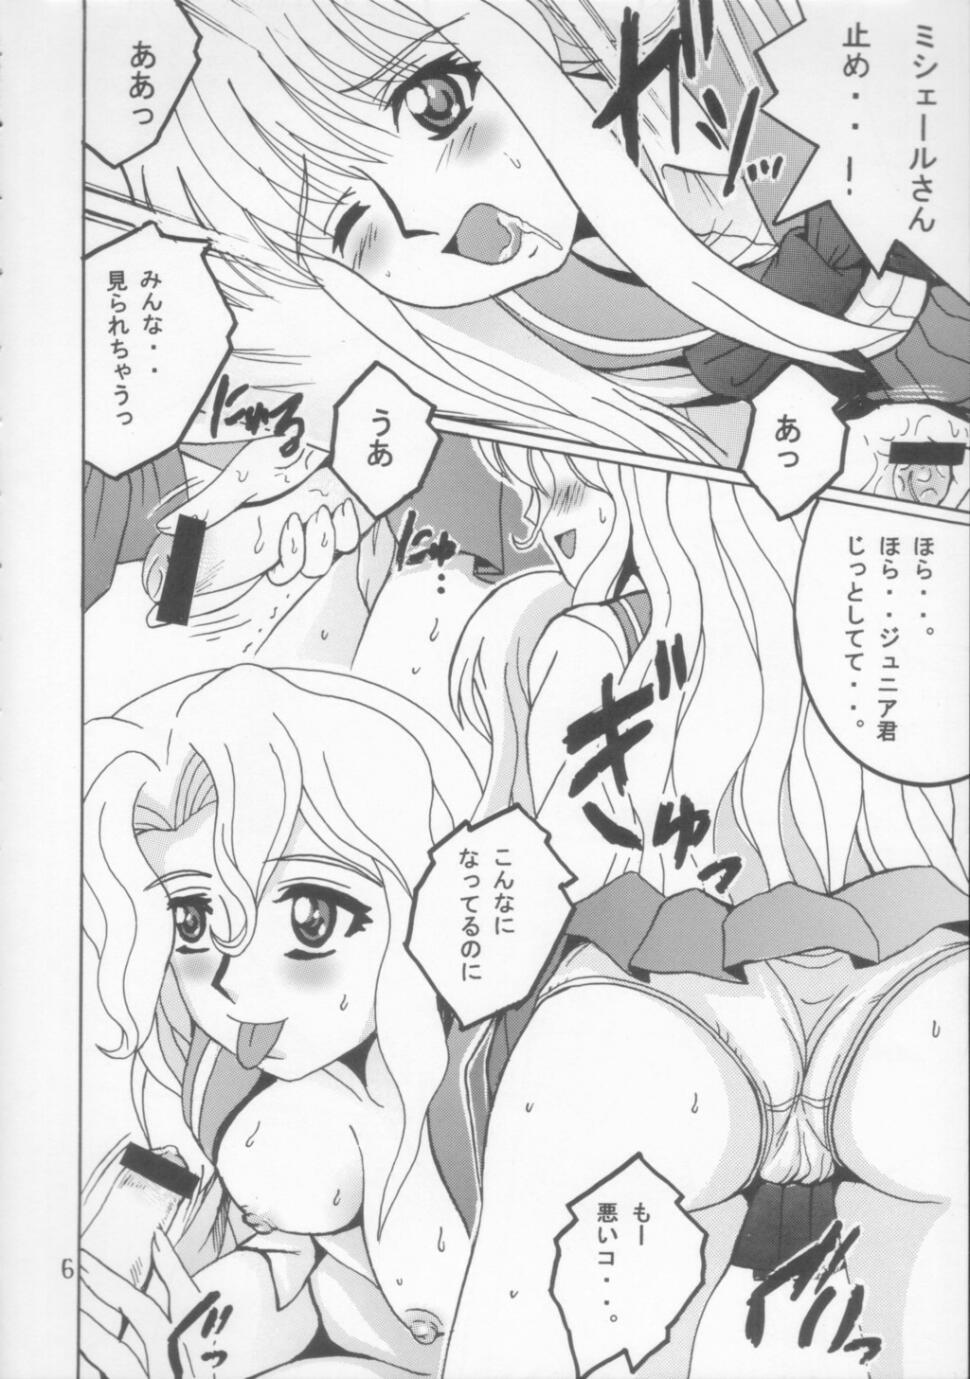 Safada SHIO! Vol. 21 - Read or die Hetero - Page 5